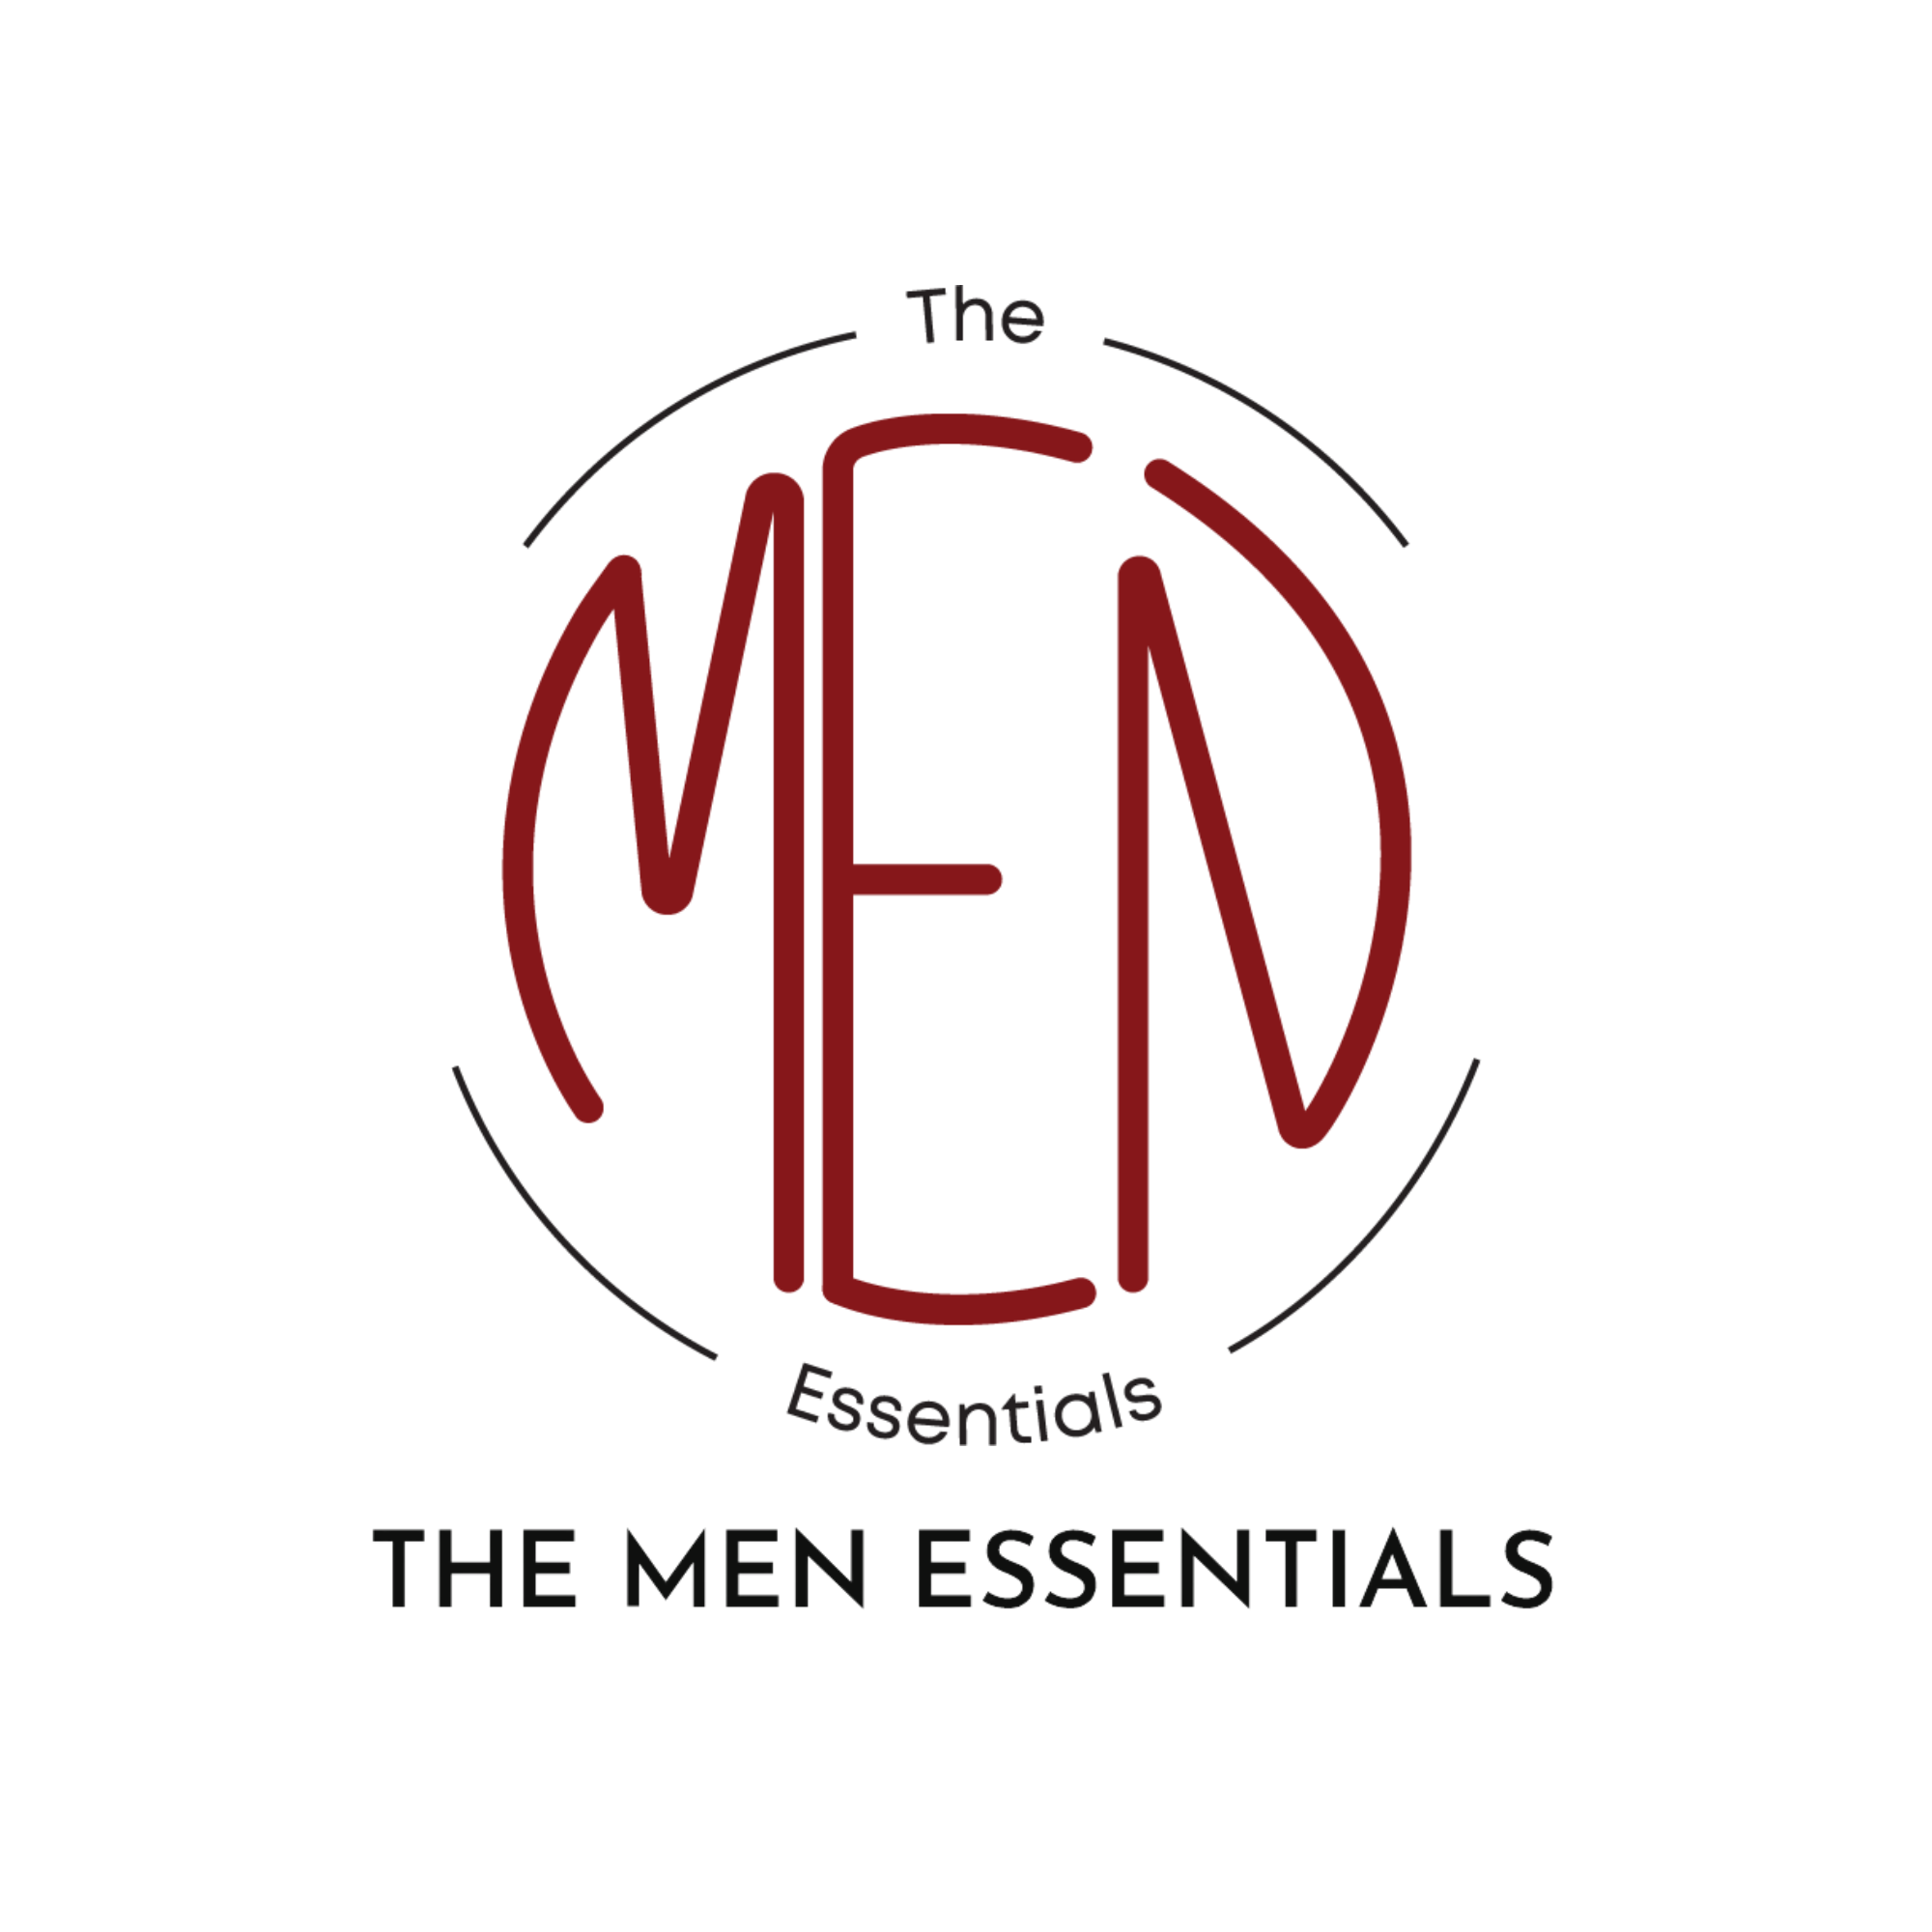 The Men Essentials